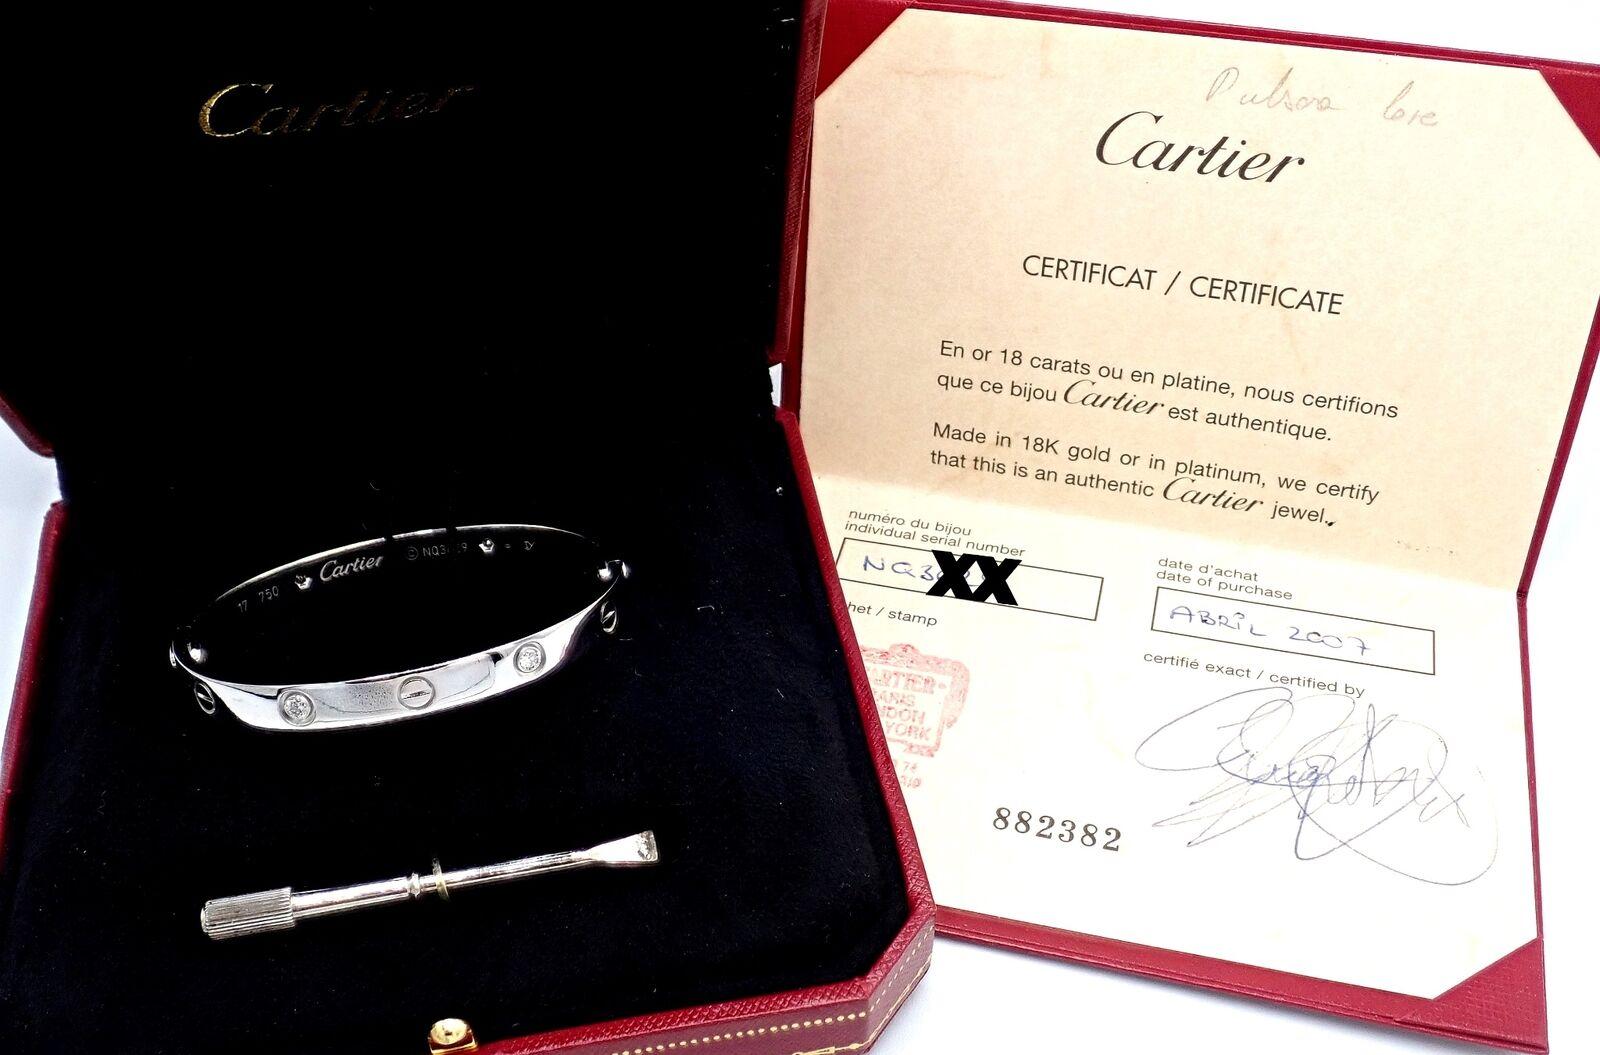 18k Weißgold Cartier LOVE Armspange, Größe 17.
Mit 4 runden Diamanten im Brillantschliff VS1 Reinheit, G Farbe Gesamtgewicht .42ct
Dieses Armband wird mit einem Cartier-Echtheitszertifikat, einer Cartier-Box und einem Schraubendreher